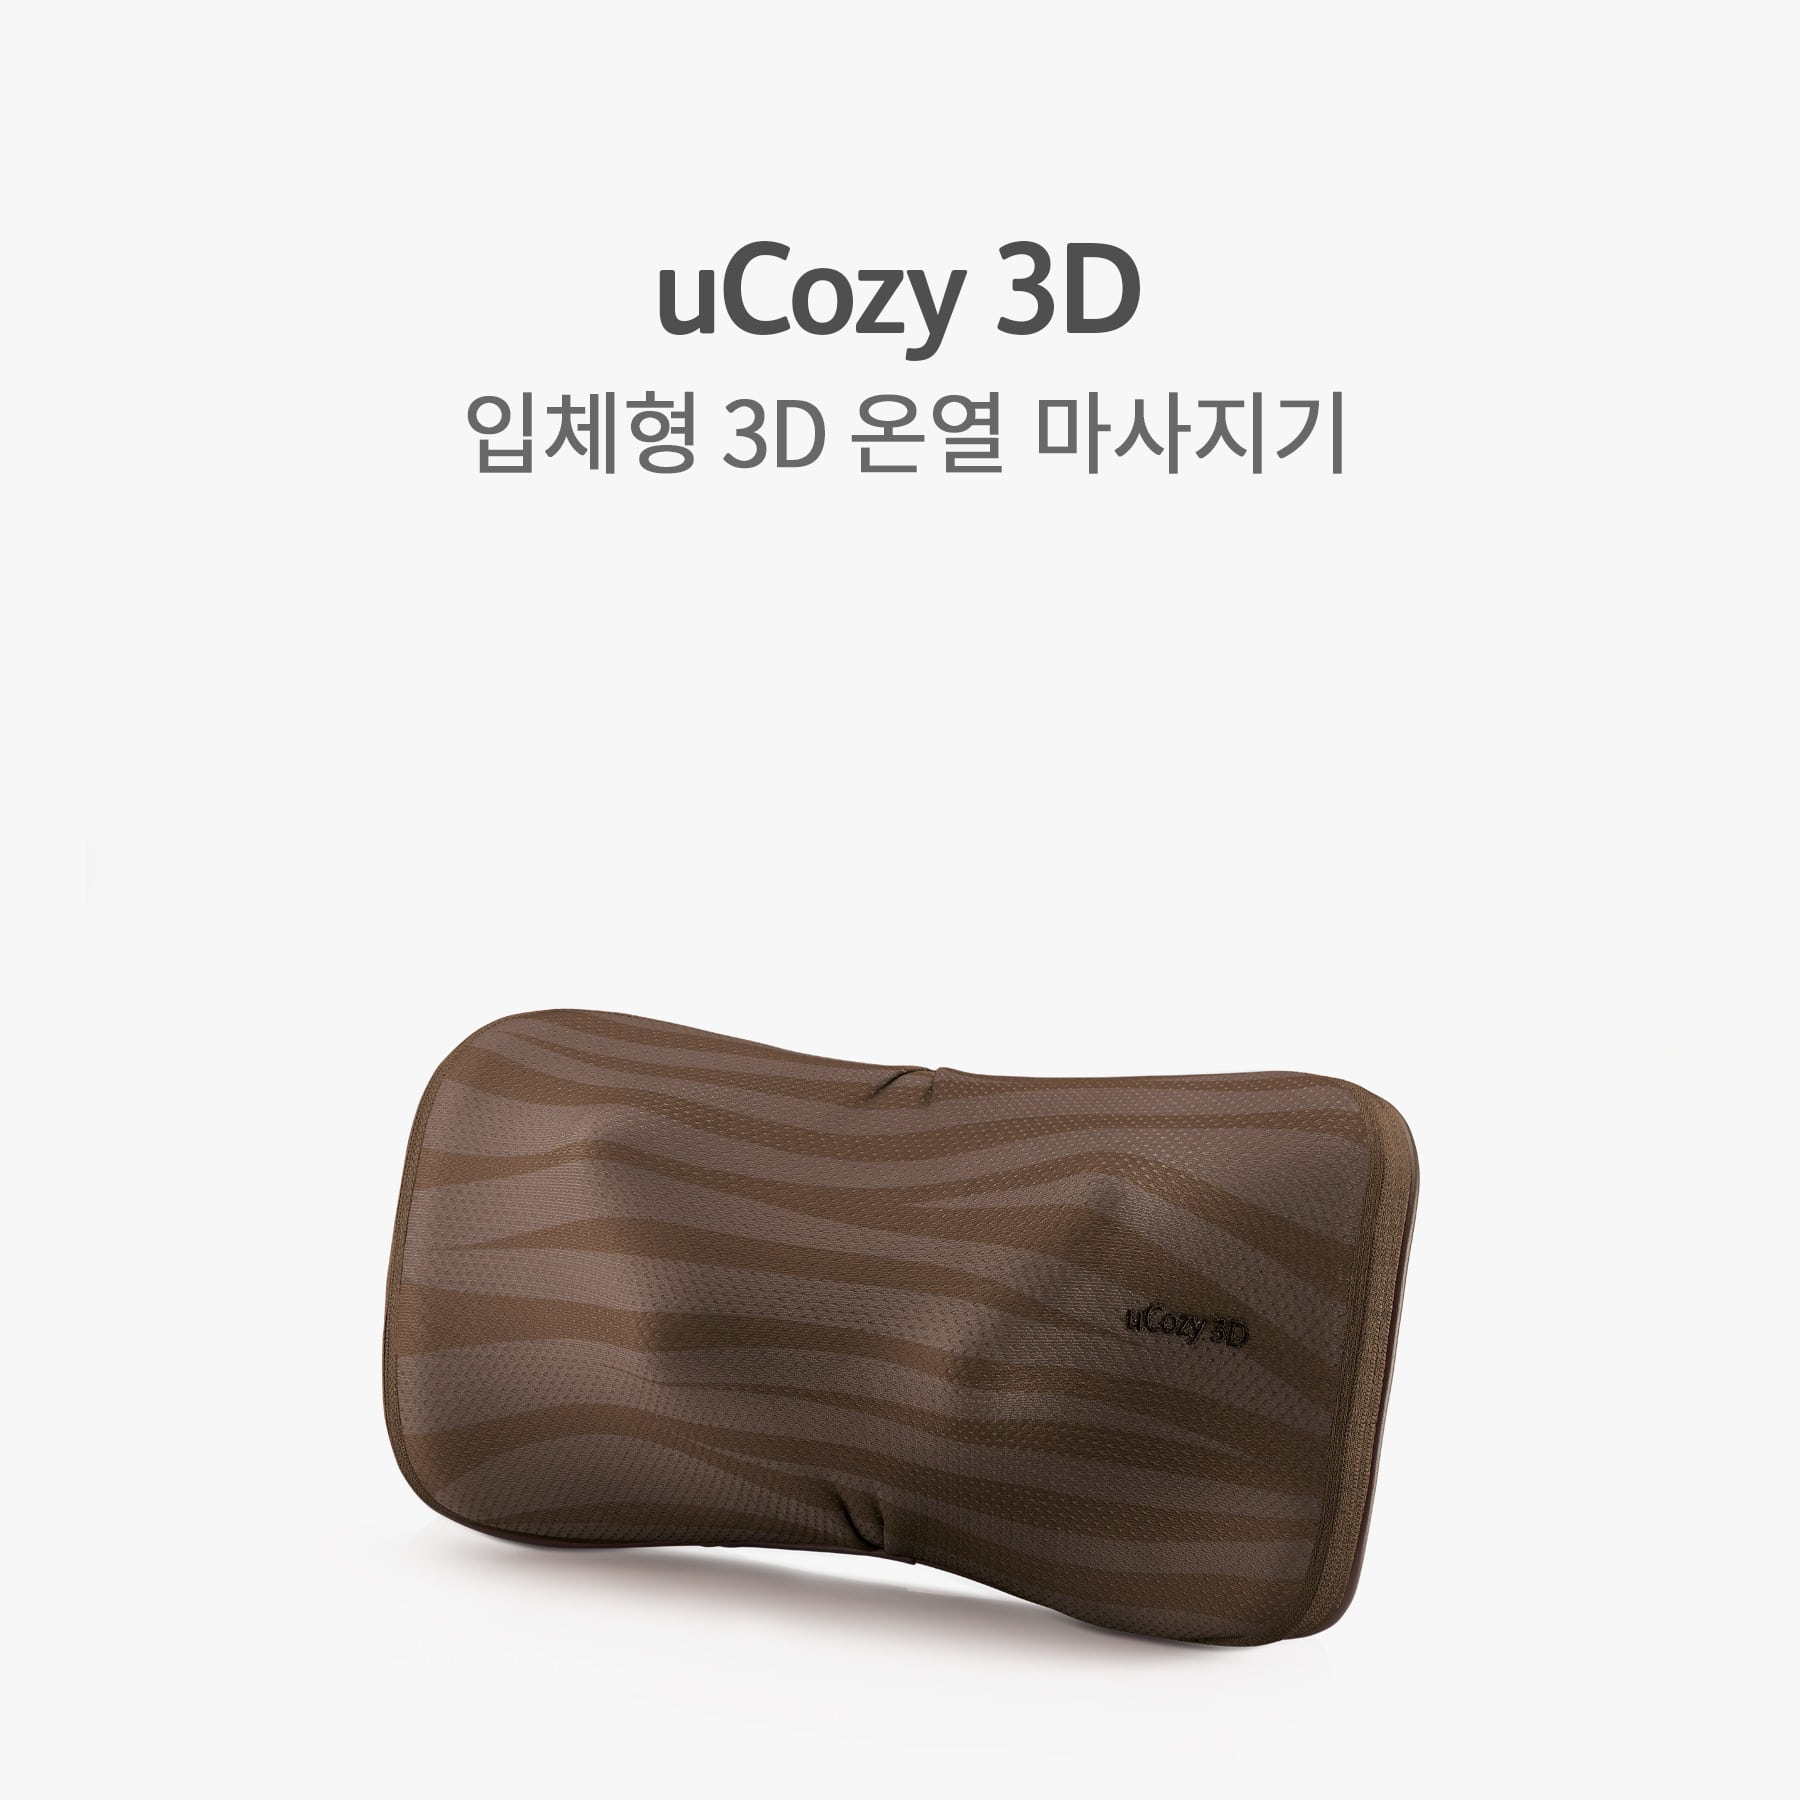 유코지 3D (uCozy 3D, OS-288)